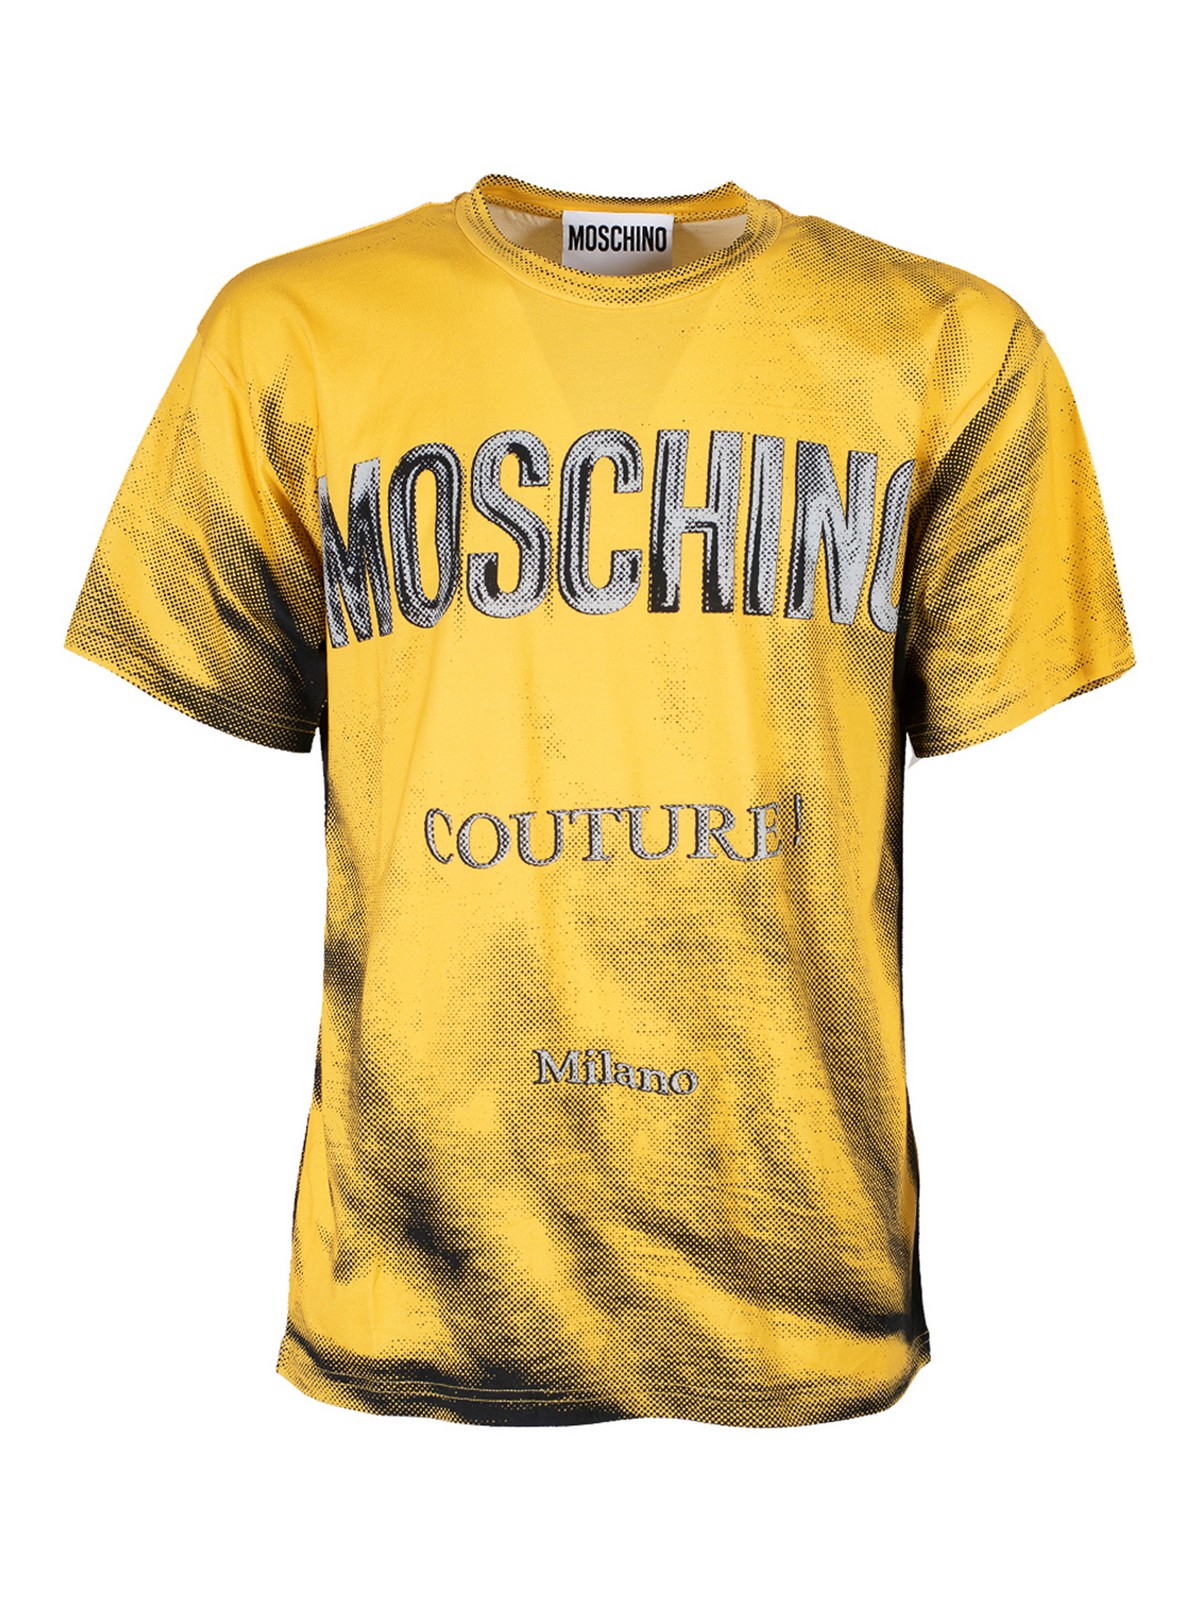 Moschino Trompe Loeuil Tshirt In Yellow